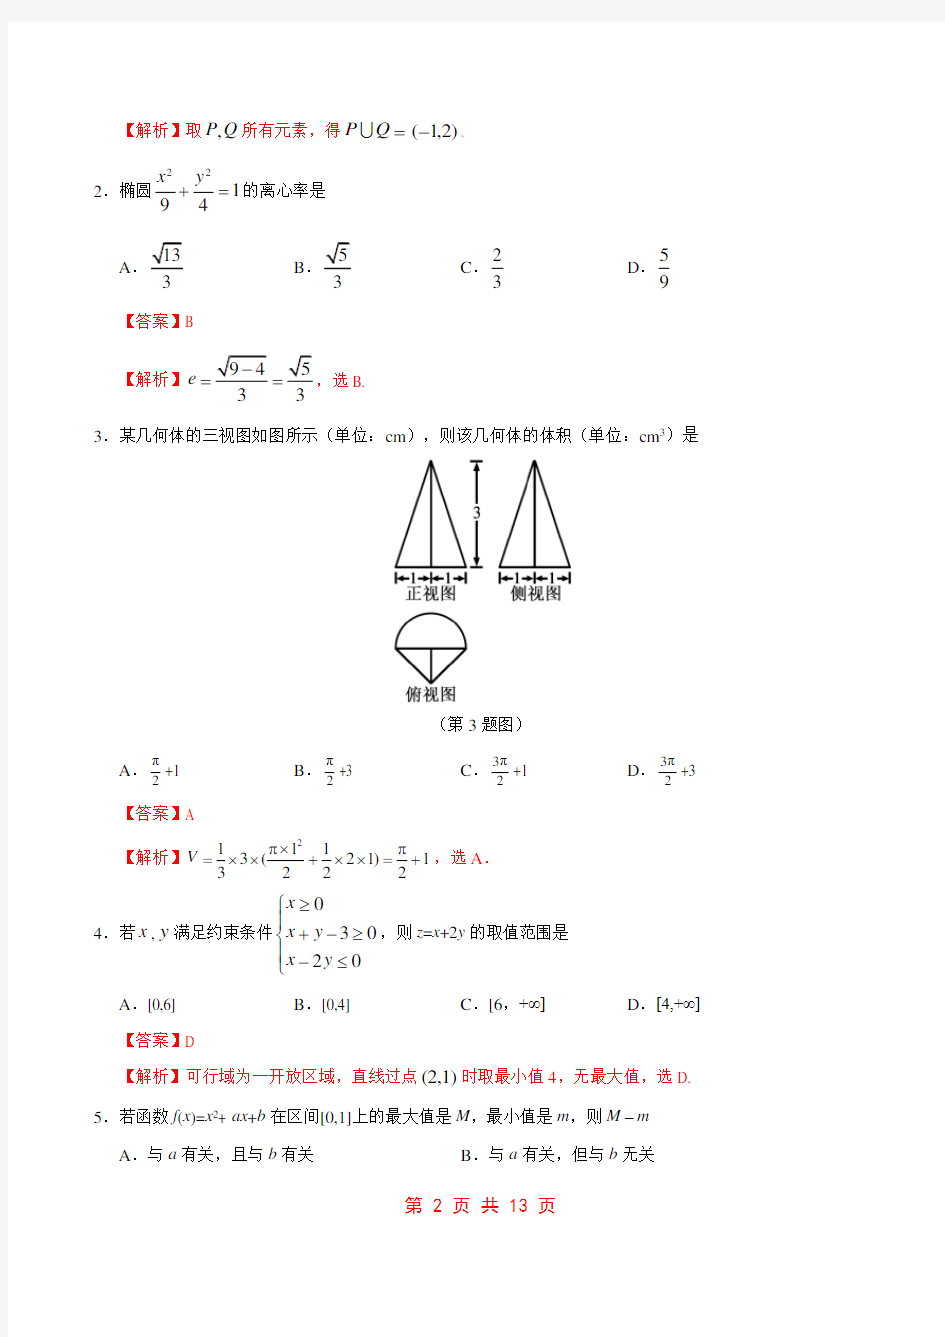 2017年高考浙江卷数学试题解析(正式版)(解析版)